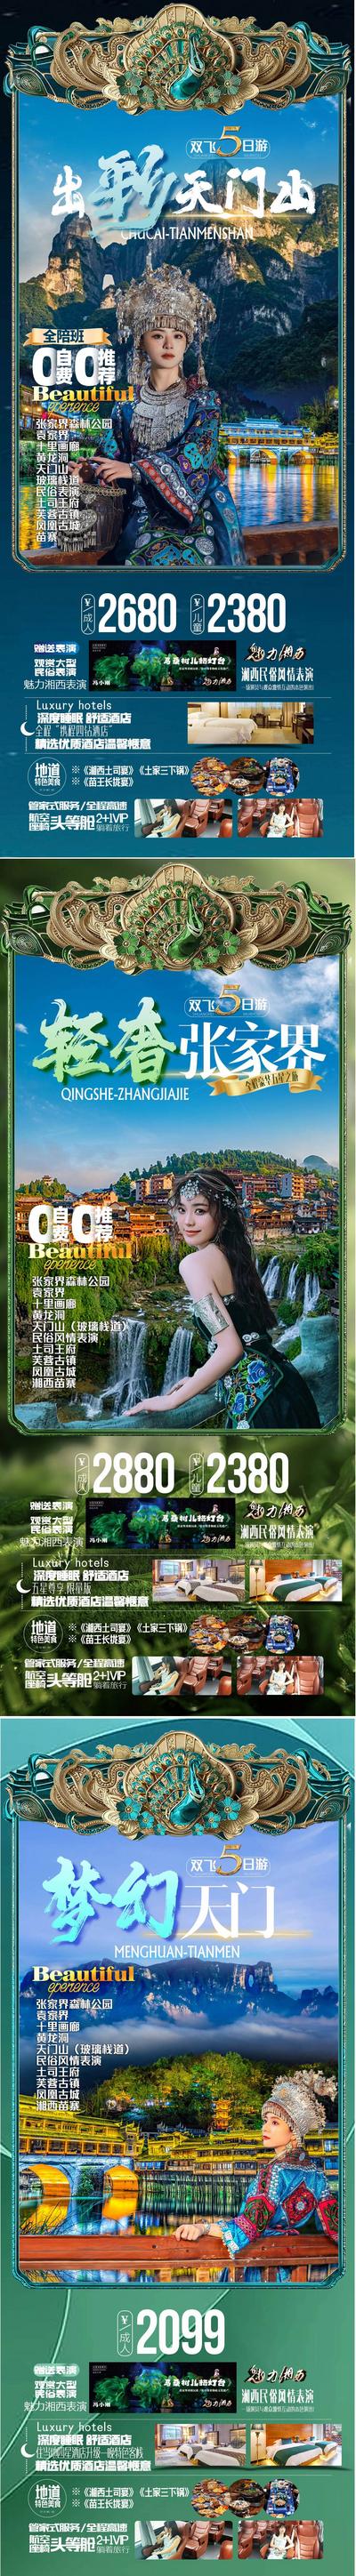 南门网 广告 海报 旅游 天门山 风景 景点 促销 长图 张家界 系列